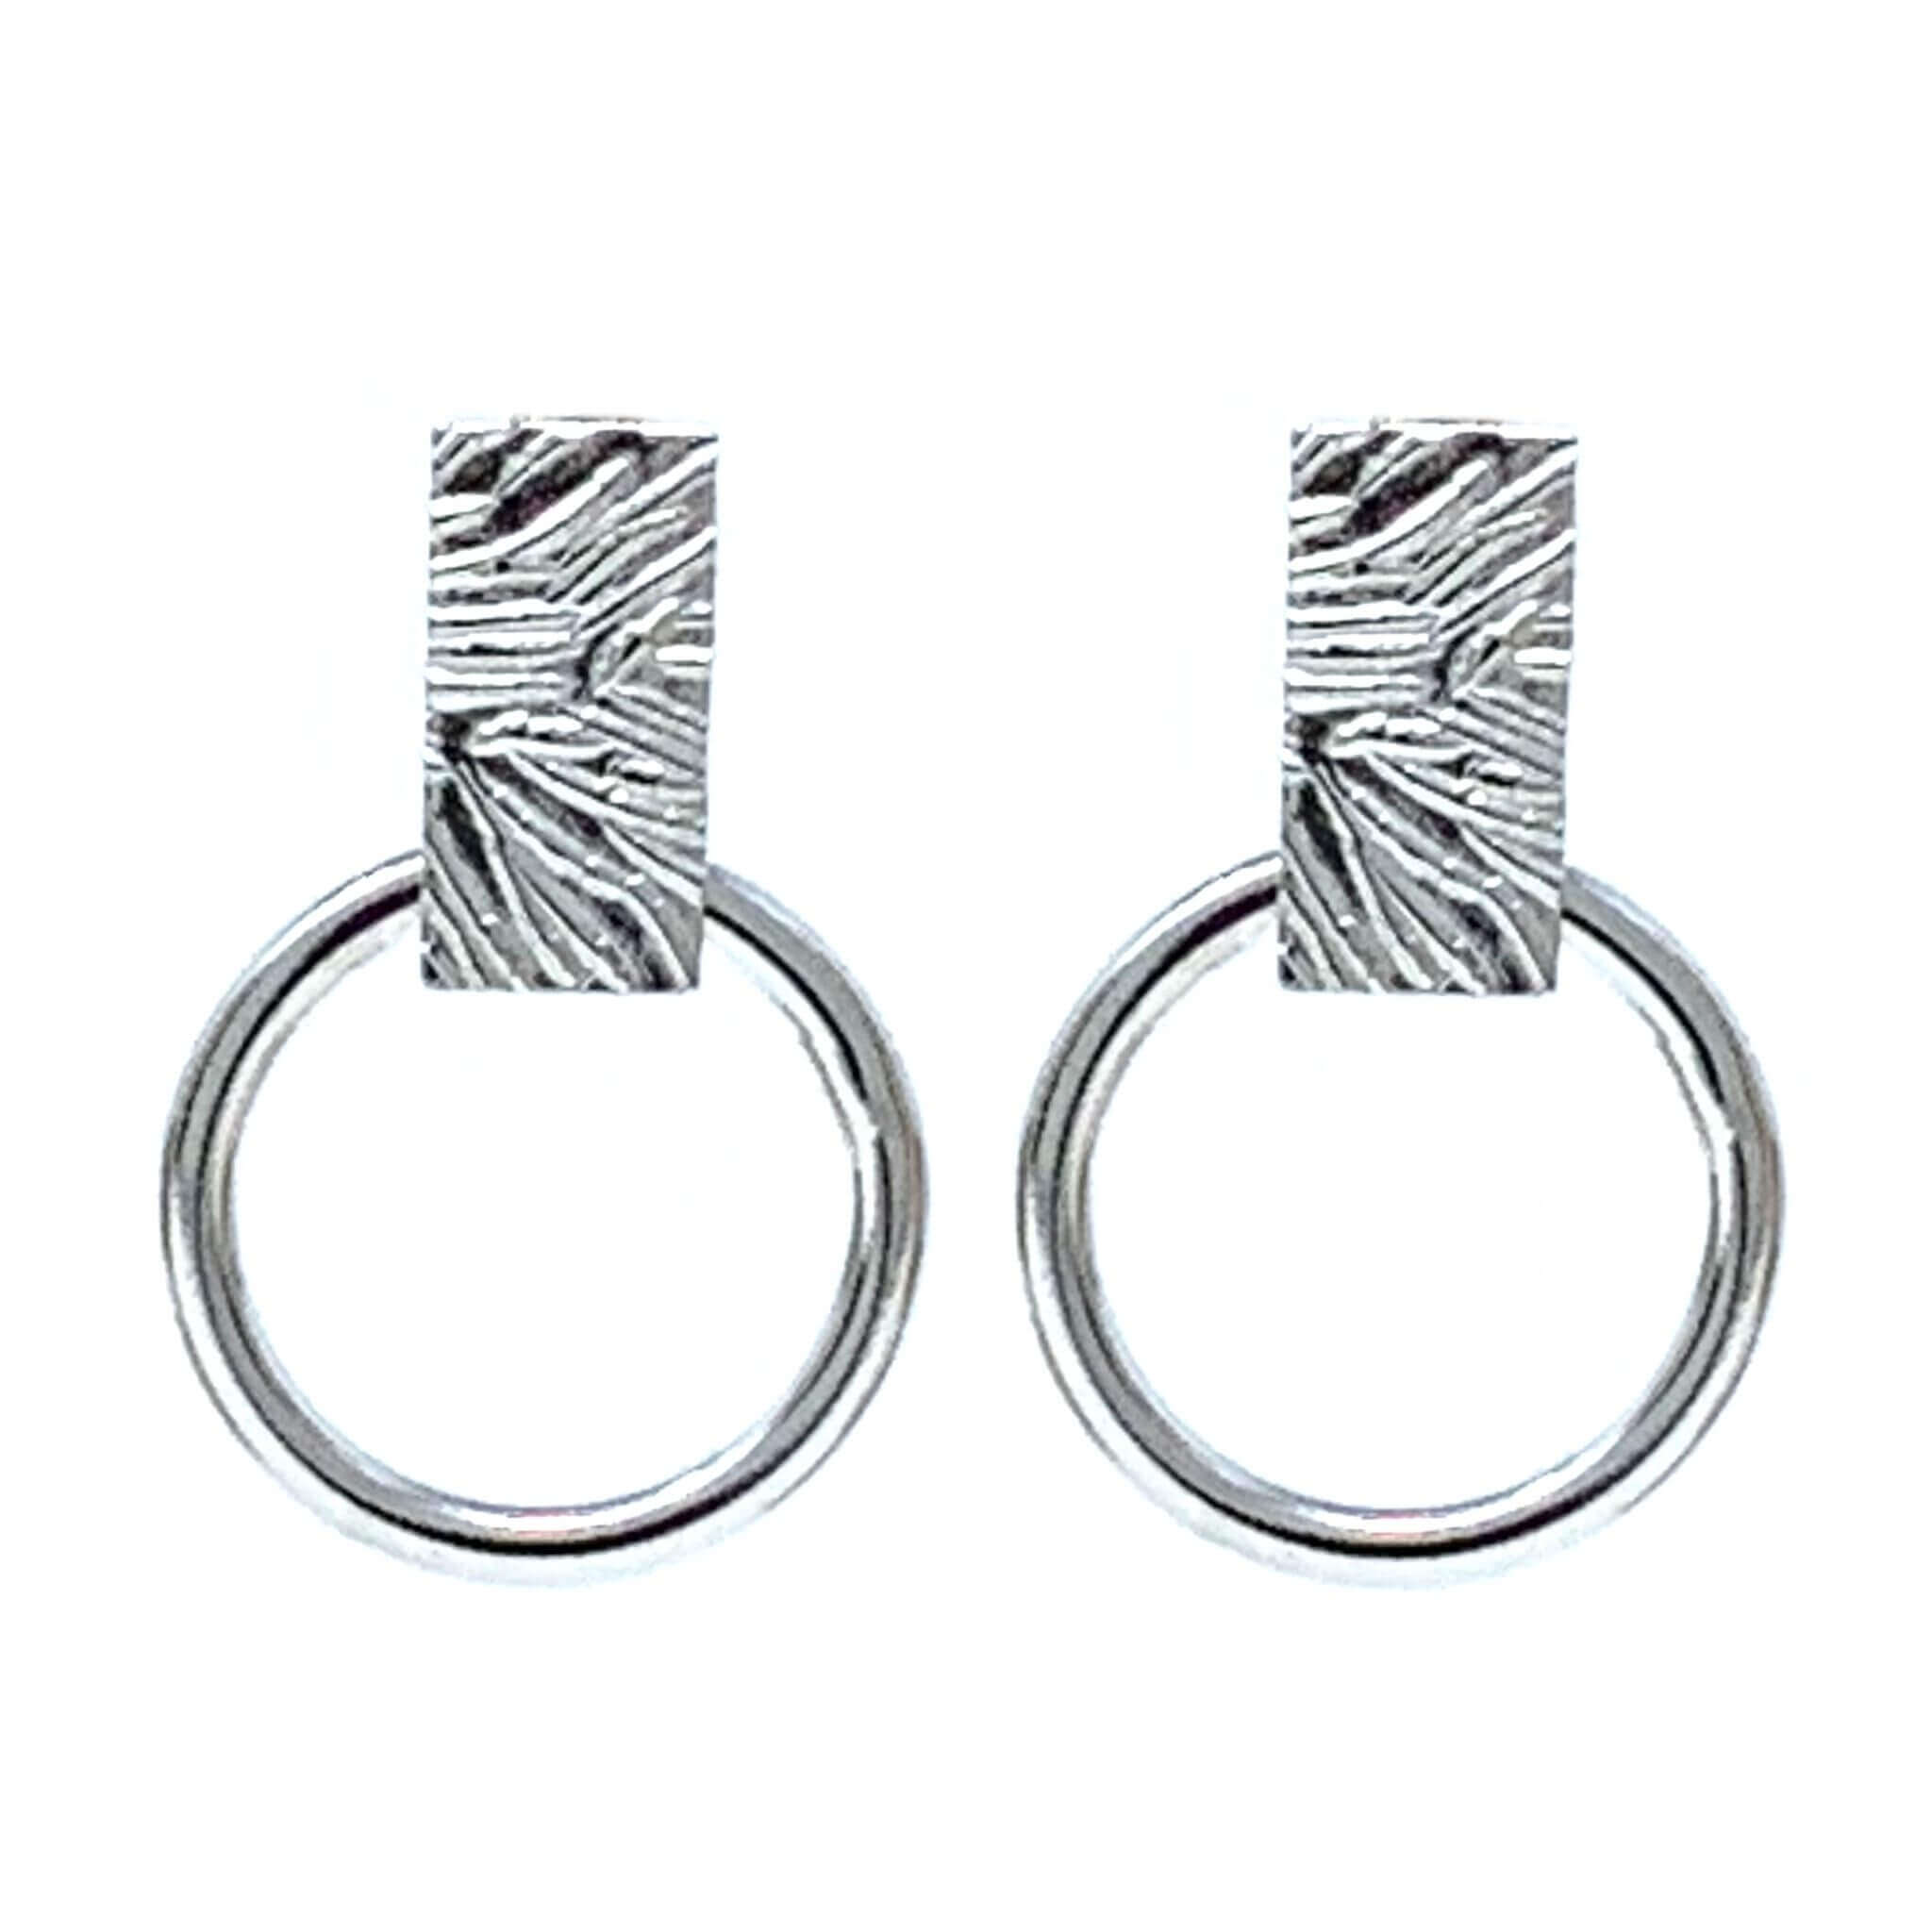 ROUX Earrings - Oxidized Sterling Silver Bar Minimal Stud Earrings, Ev –  Turner Duncan Jewelry Designs